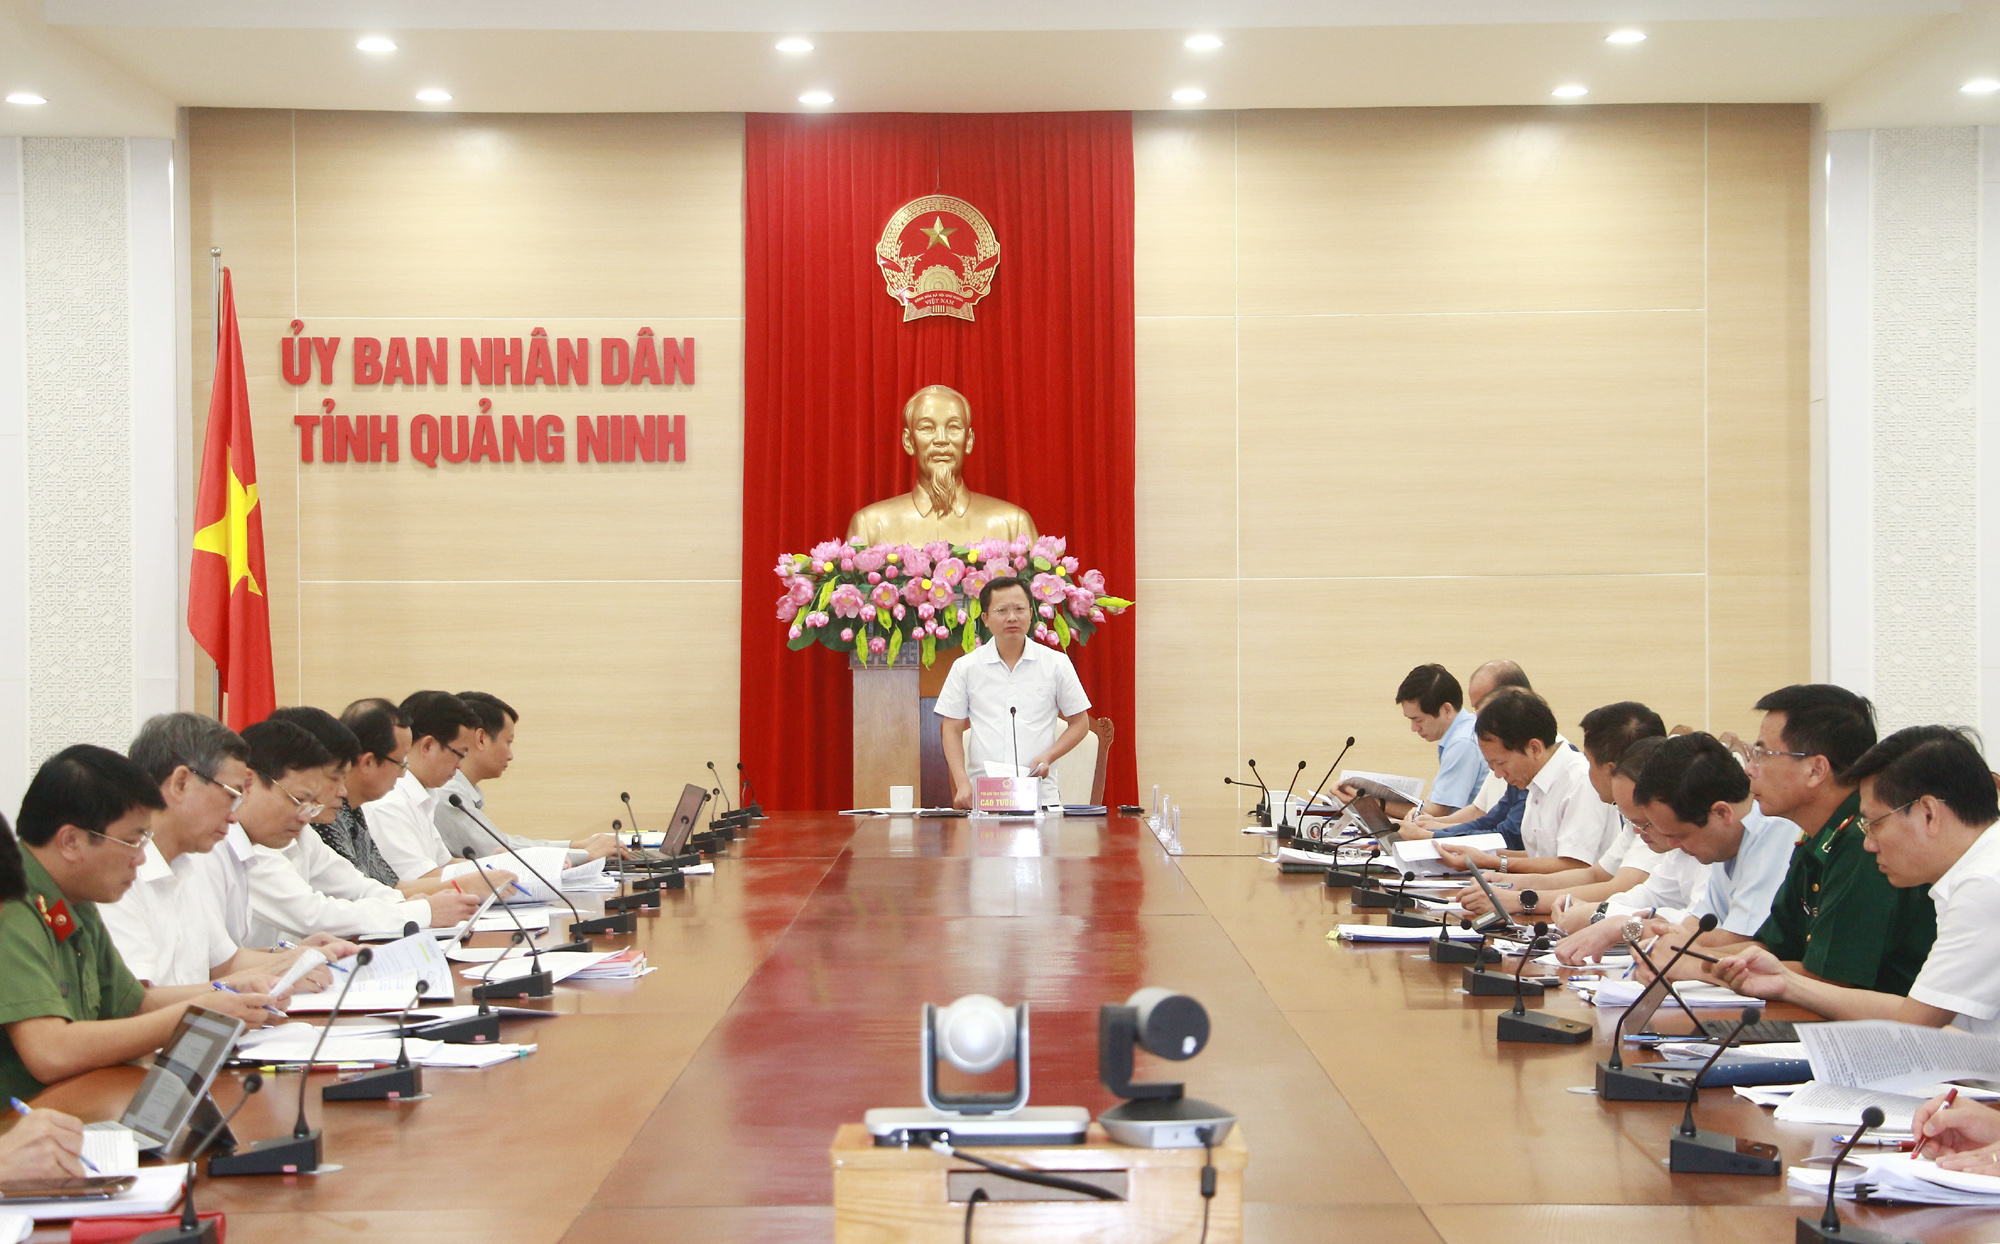 Đồng chí Cao Tường Huy, Phó Chủ tịch Thường trực UBND tỉnh, phát biểu kết luận.